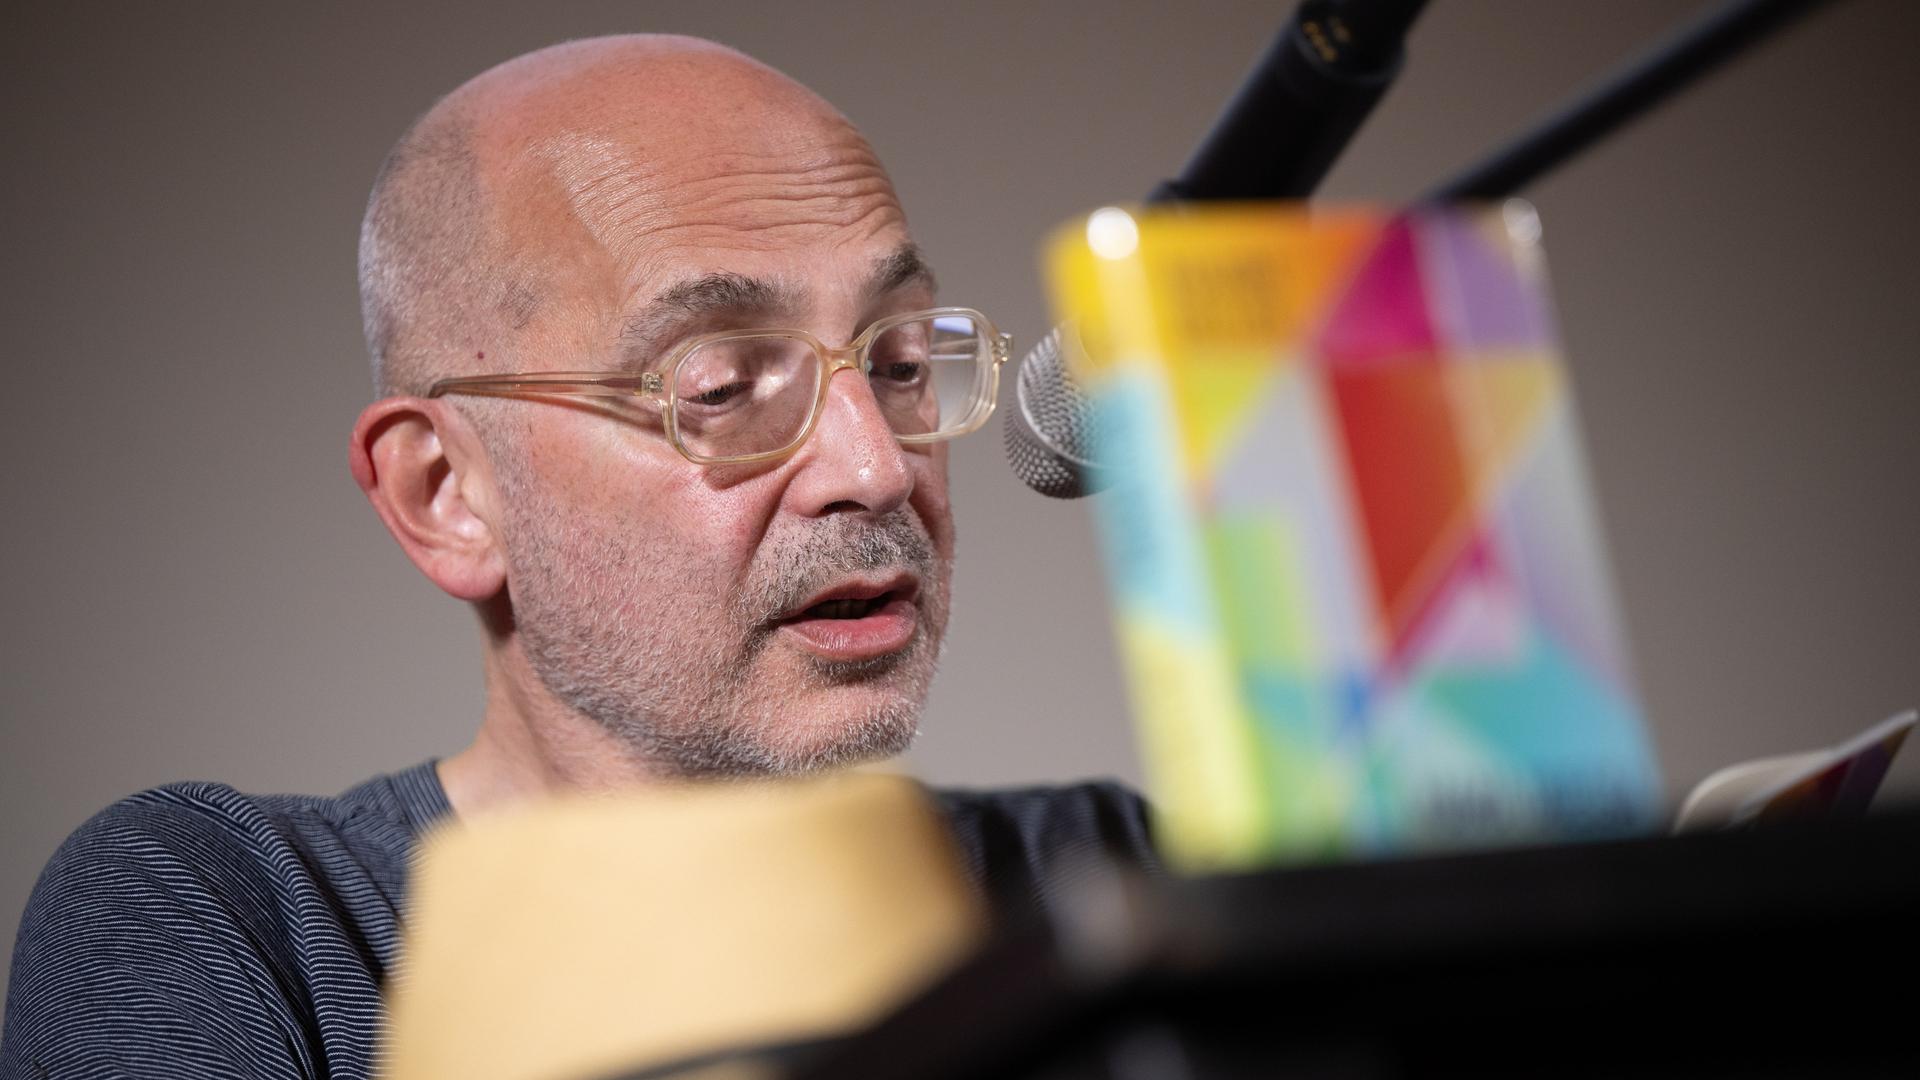 Der Schriftsteller Maxim Billder sitzt auf einer Bühne, trägt Brille und spricht ins Mikrofon